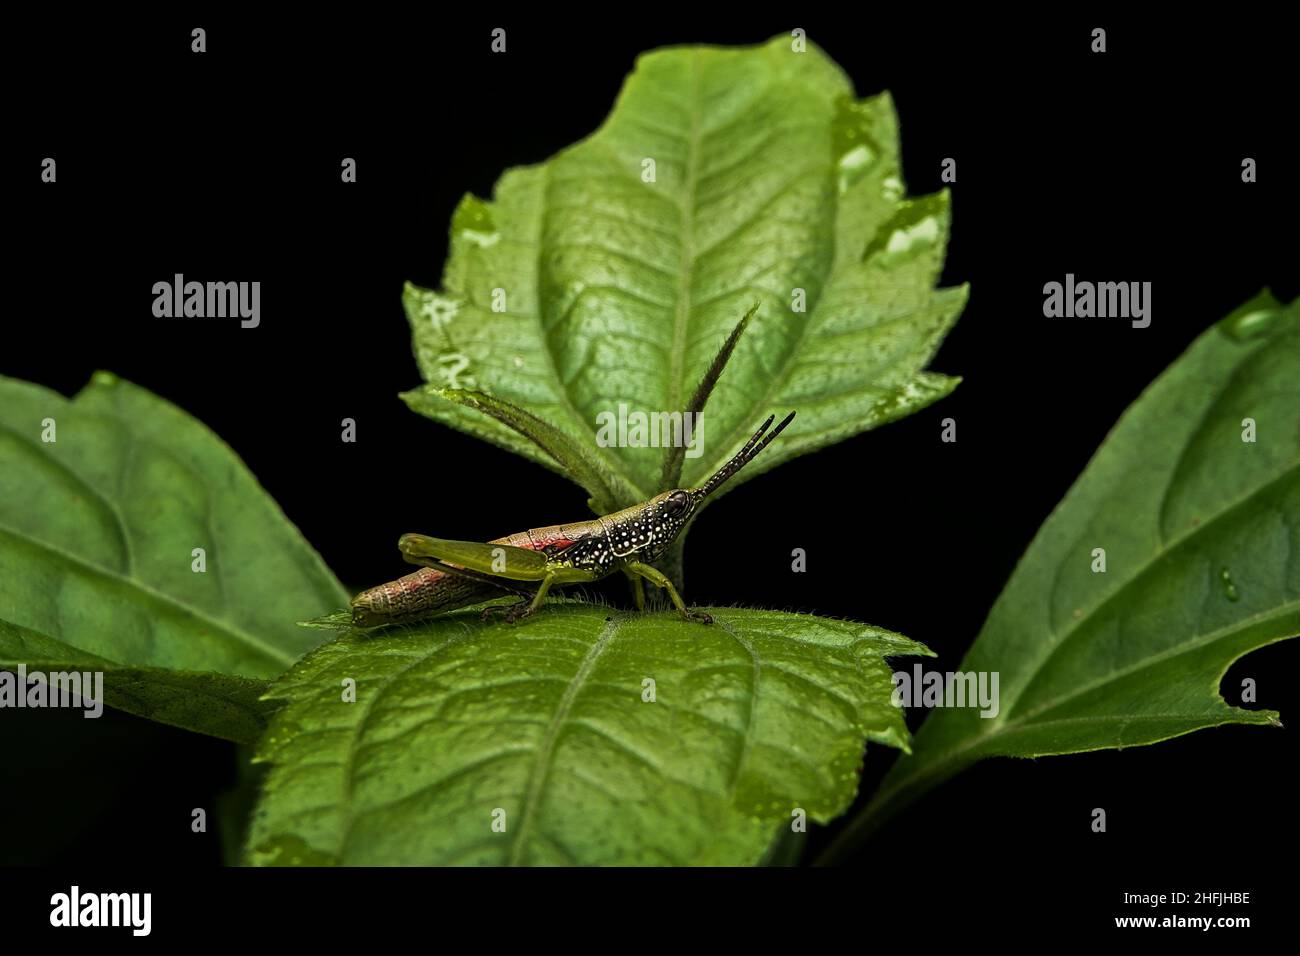 grasshopper-Fotografie, Makroaufnahmen, wunderschöne Naturszene. Nahaufnahme wunderschöne Wildtierkrekturen in ihrem natürlichen Lebensraum Wildnis Stockfoto